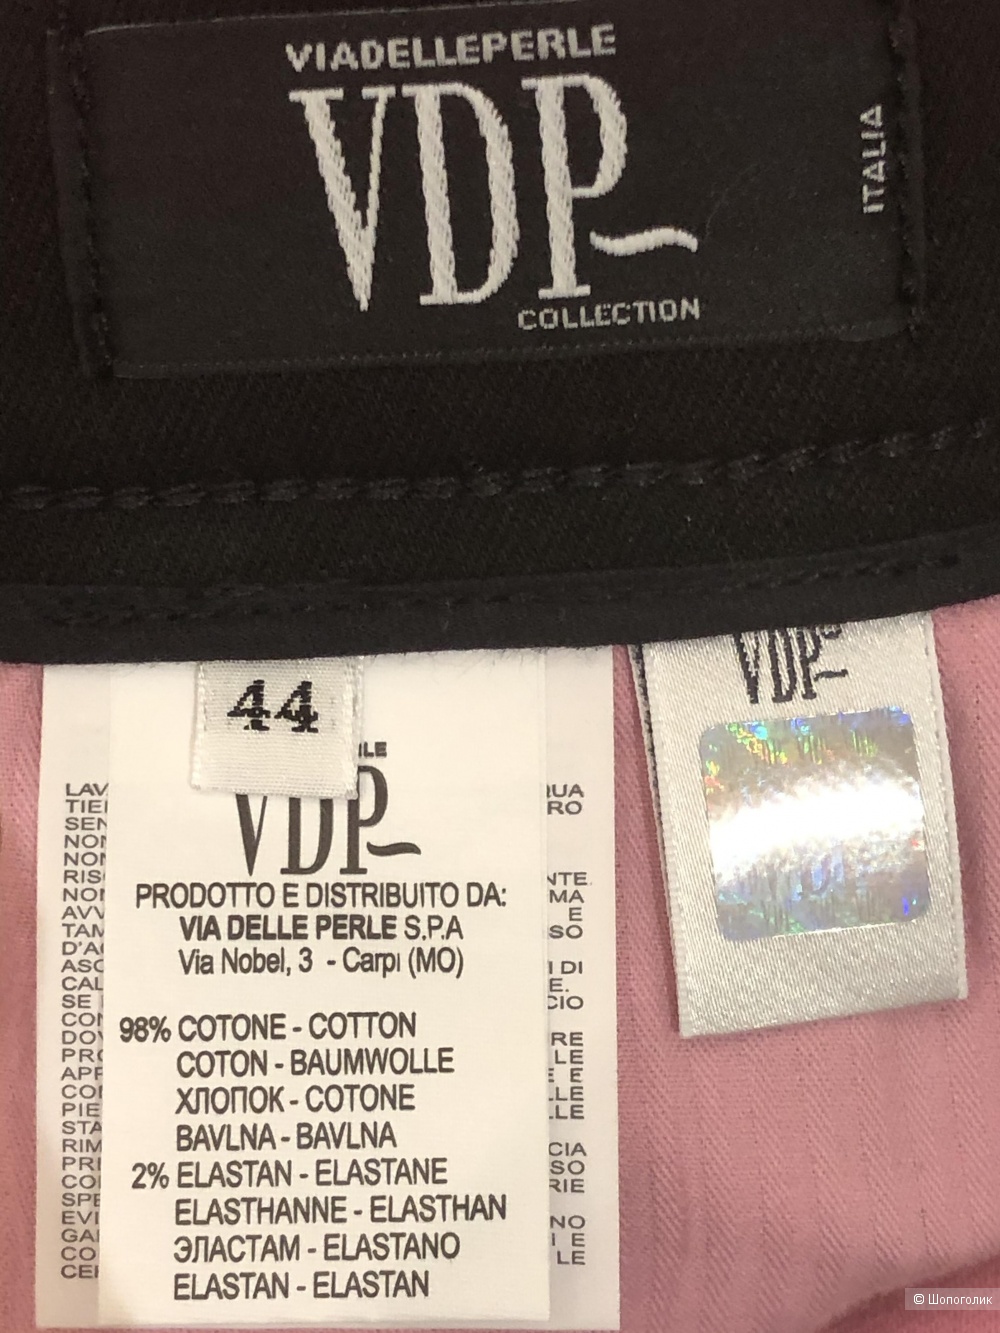 Джинсовые брюки VDP COLLECTION размер 46